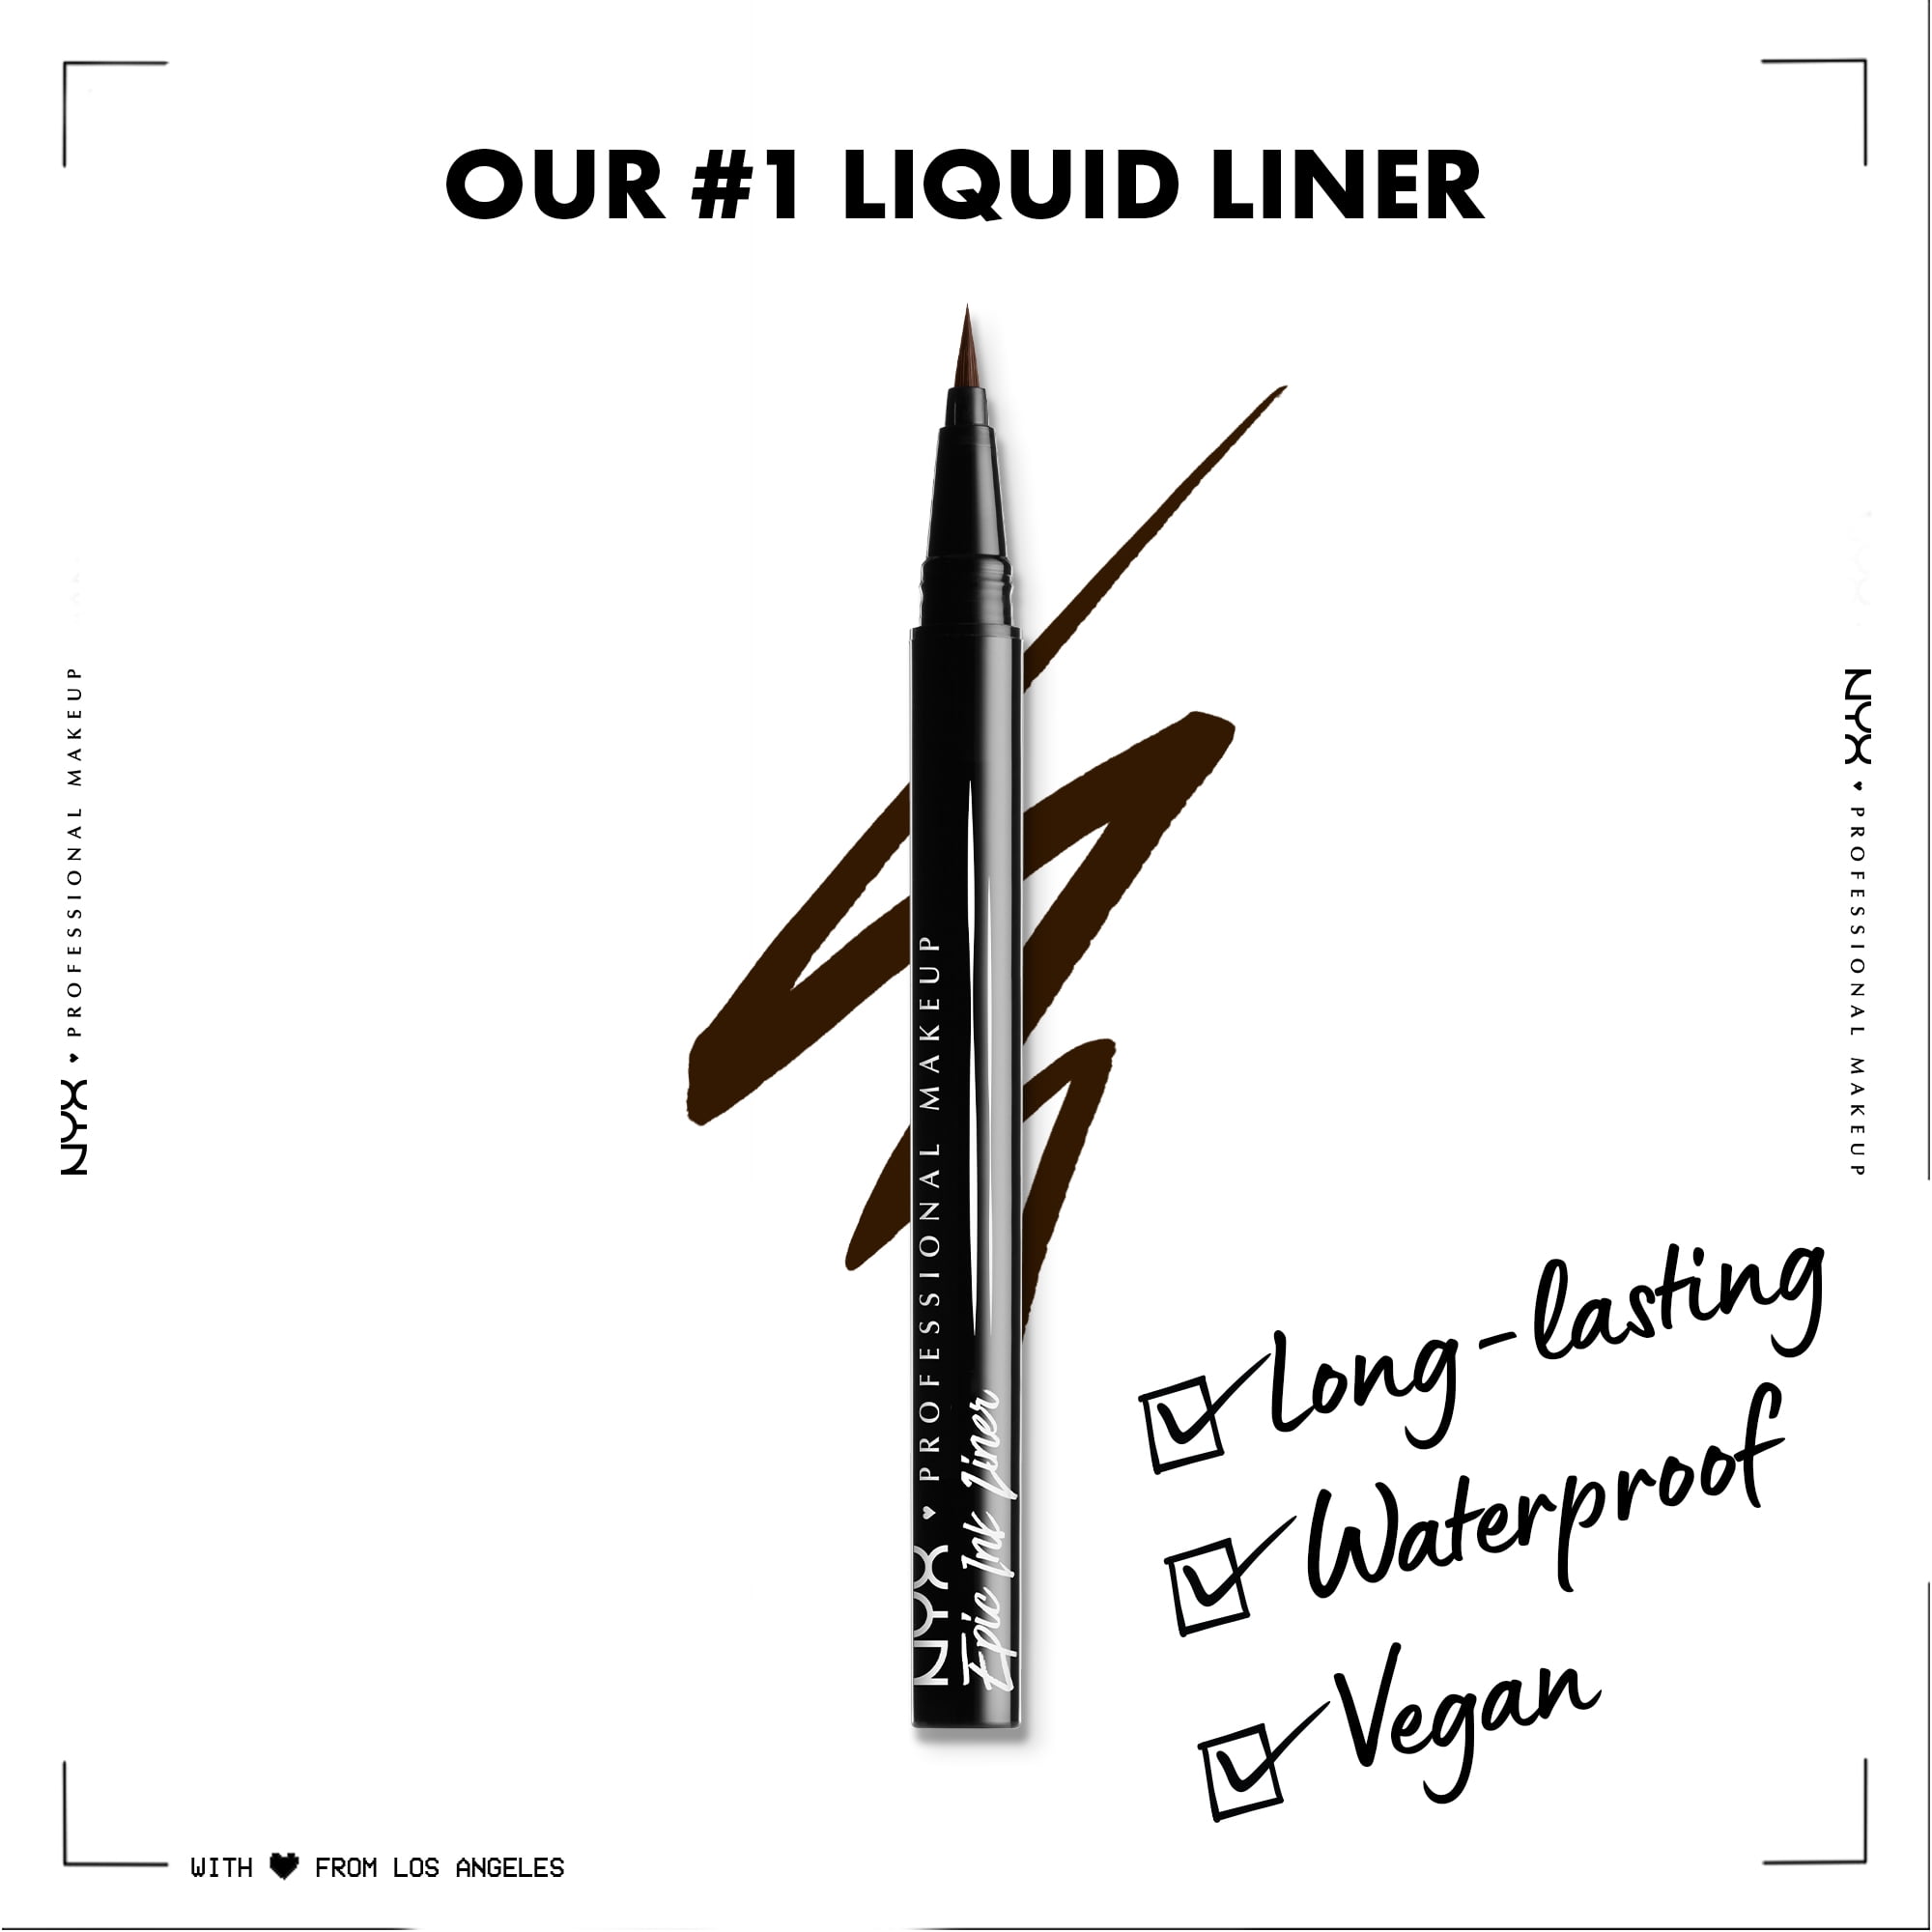 NYX Professional Makeup Epic Ink Vegan Waterproof Liquid Eyeliner, Black,  0.16 oz